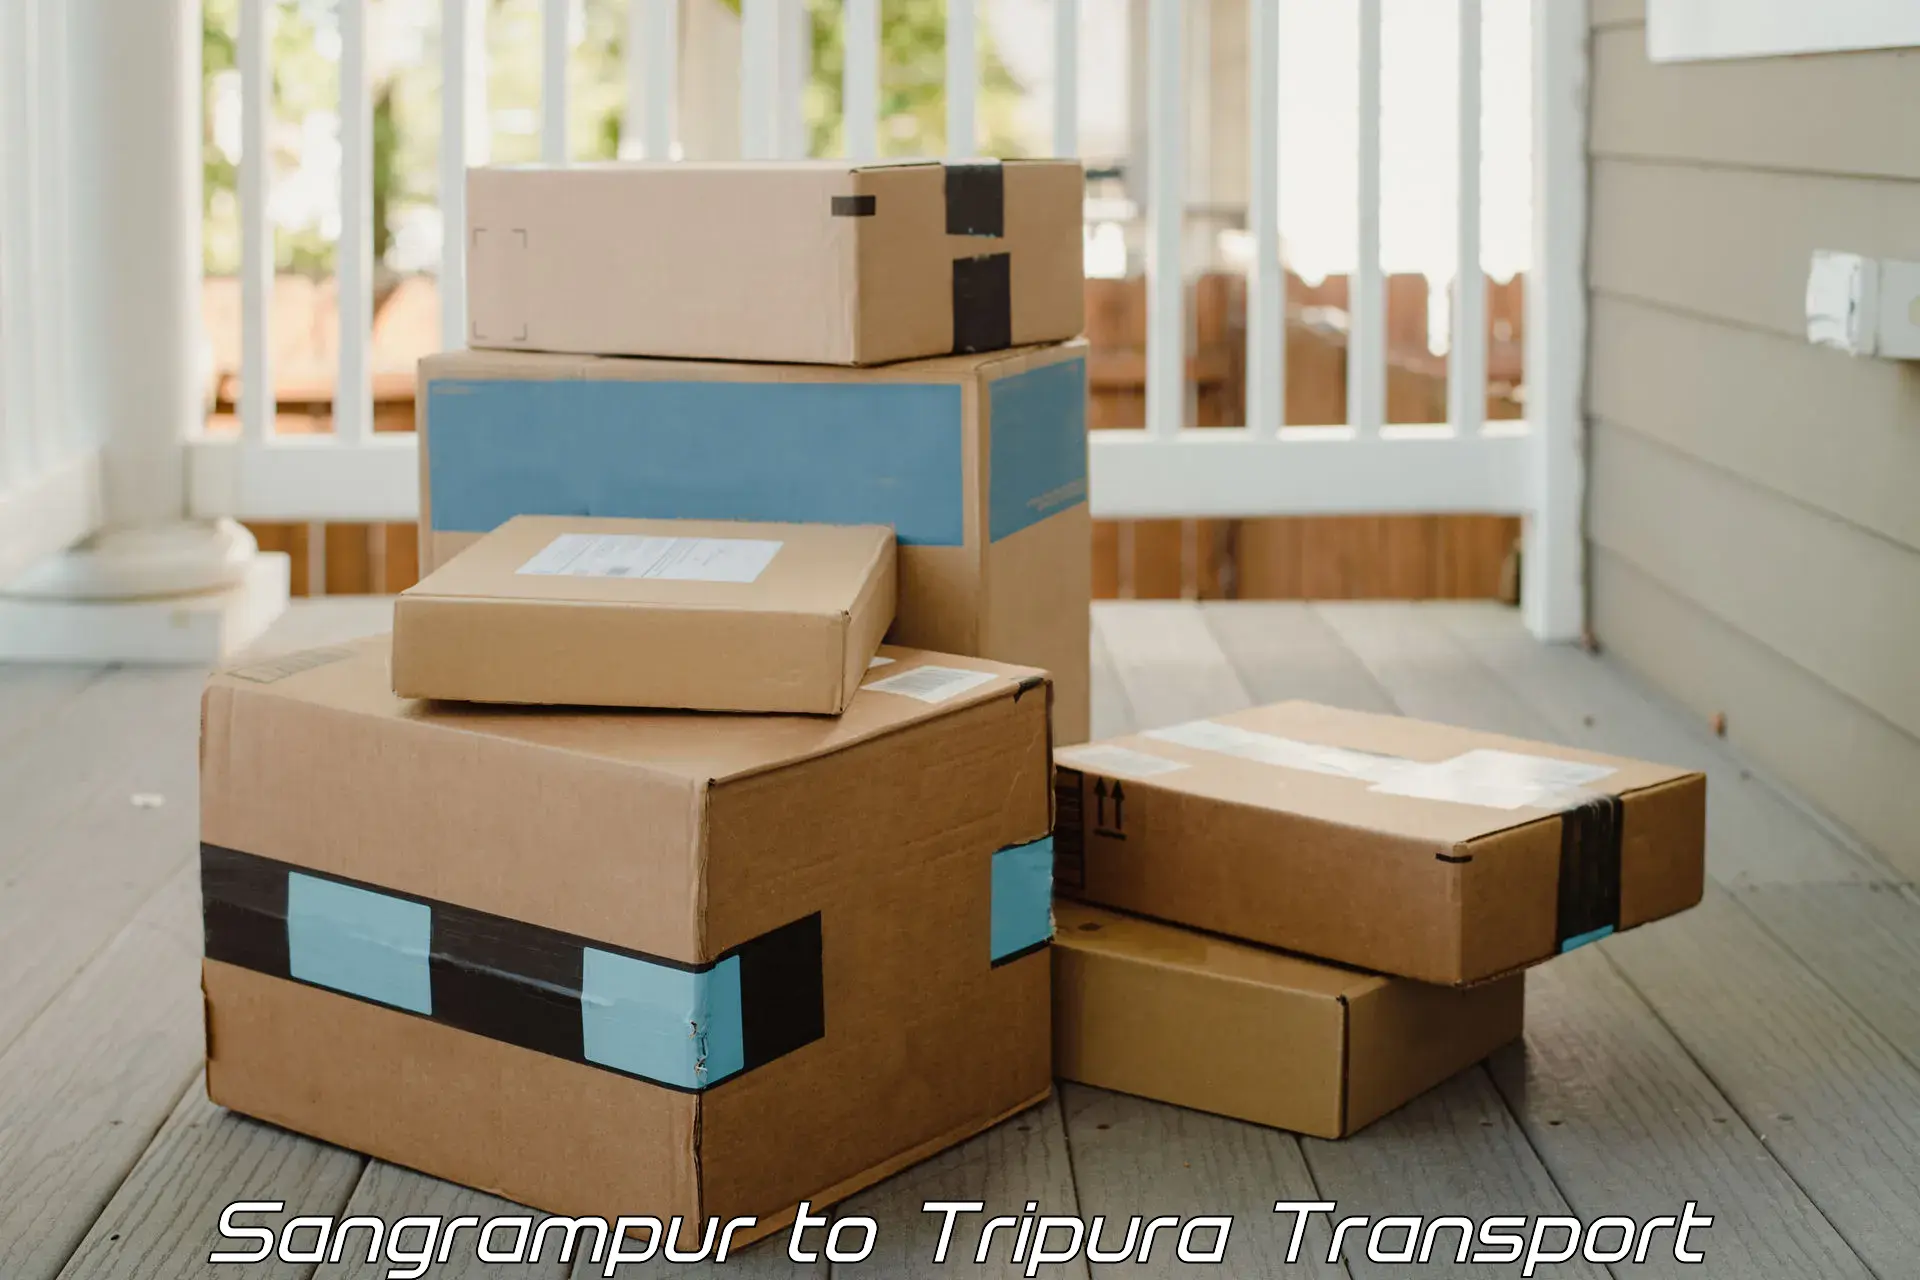 Furniture transport service Sangrampur to Tripura